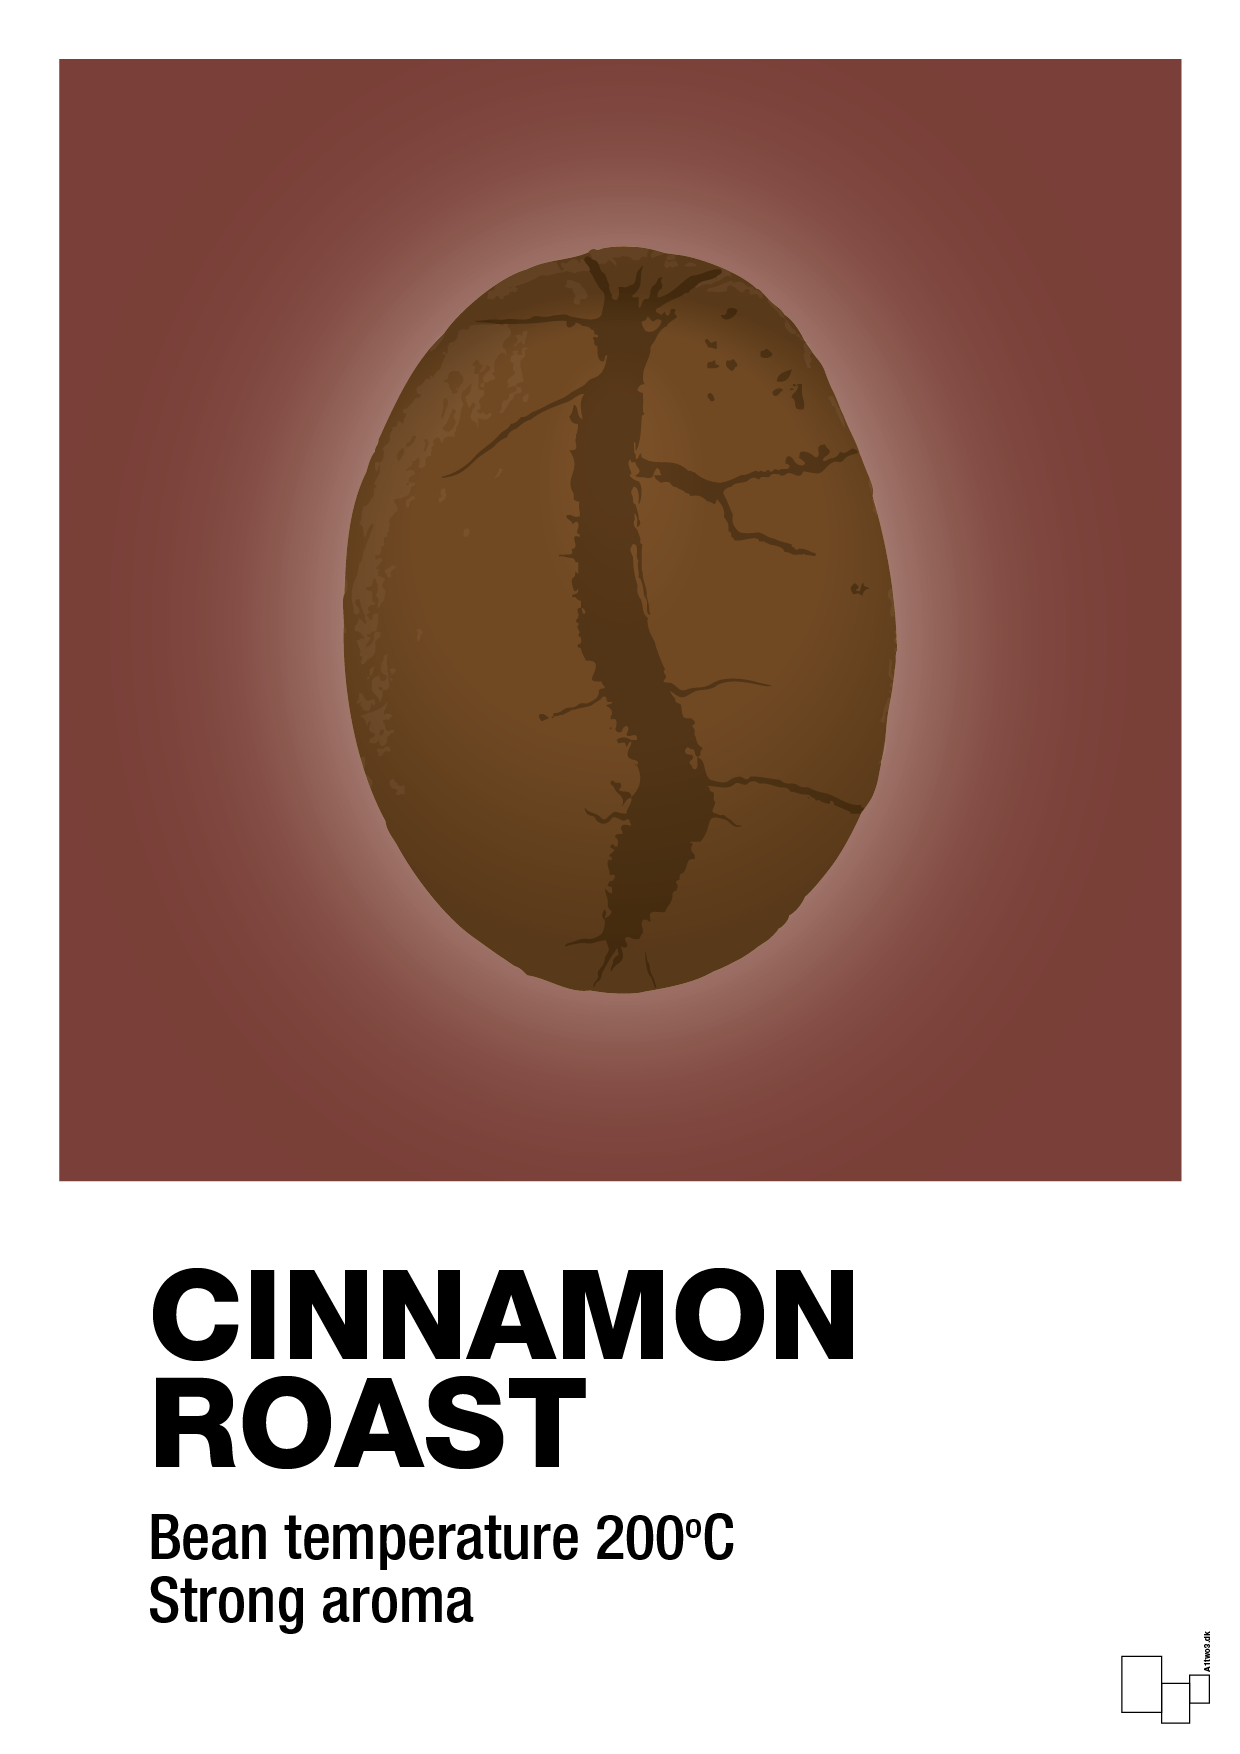 cinnamom roast - Plakat med Mad & Drikke i Red Pepper